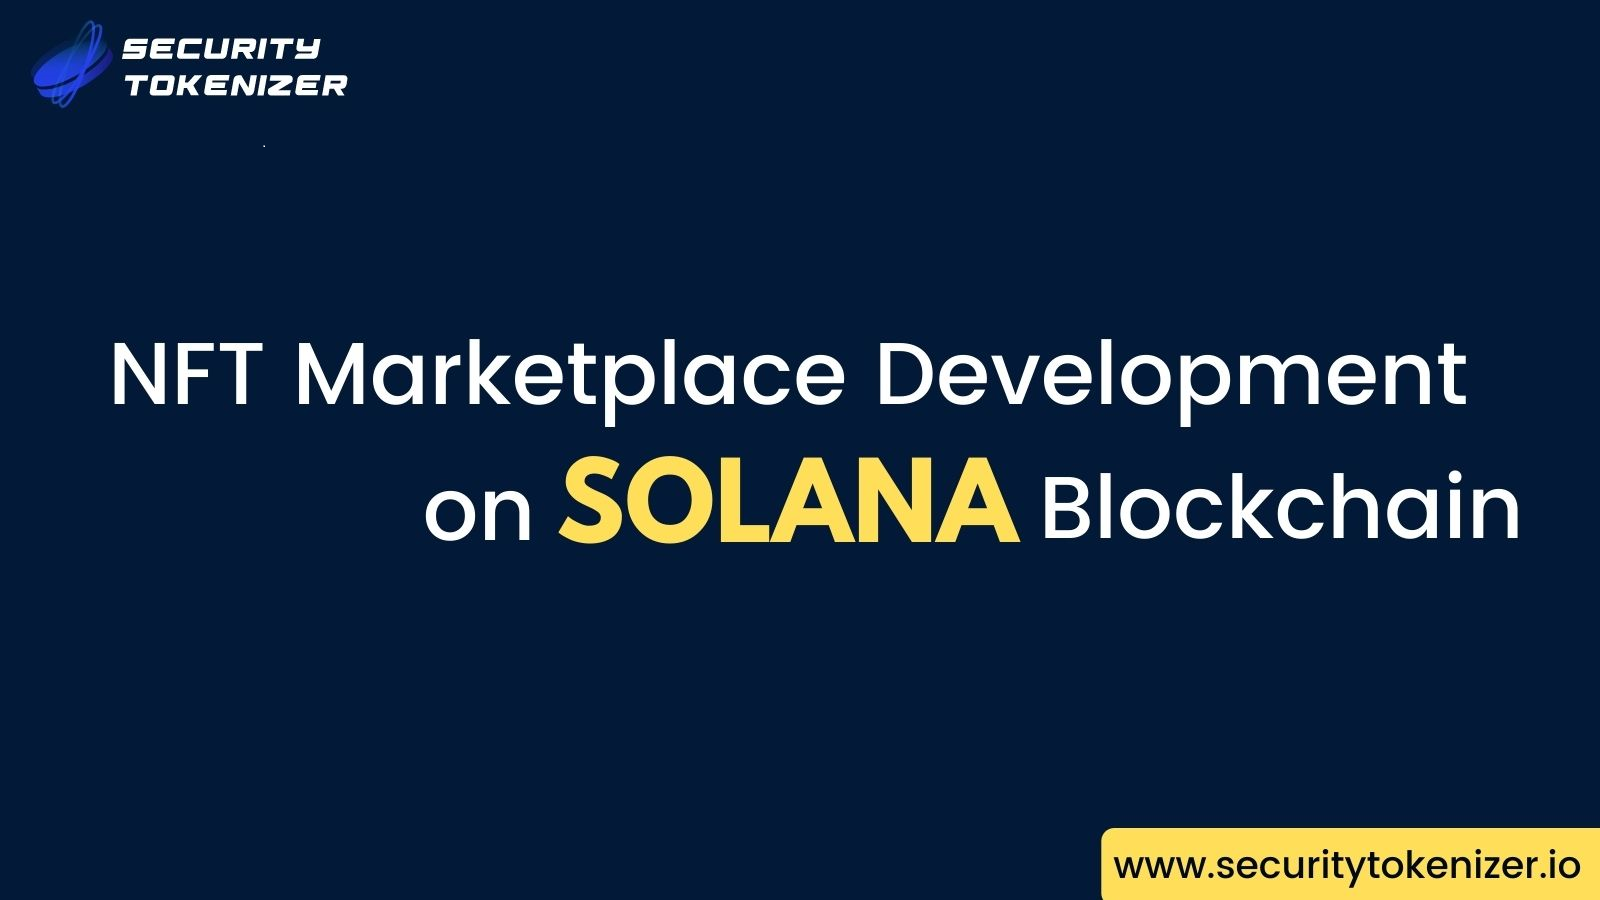 Solana NFT Marketplace Development Company